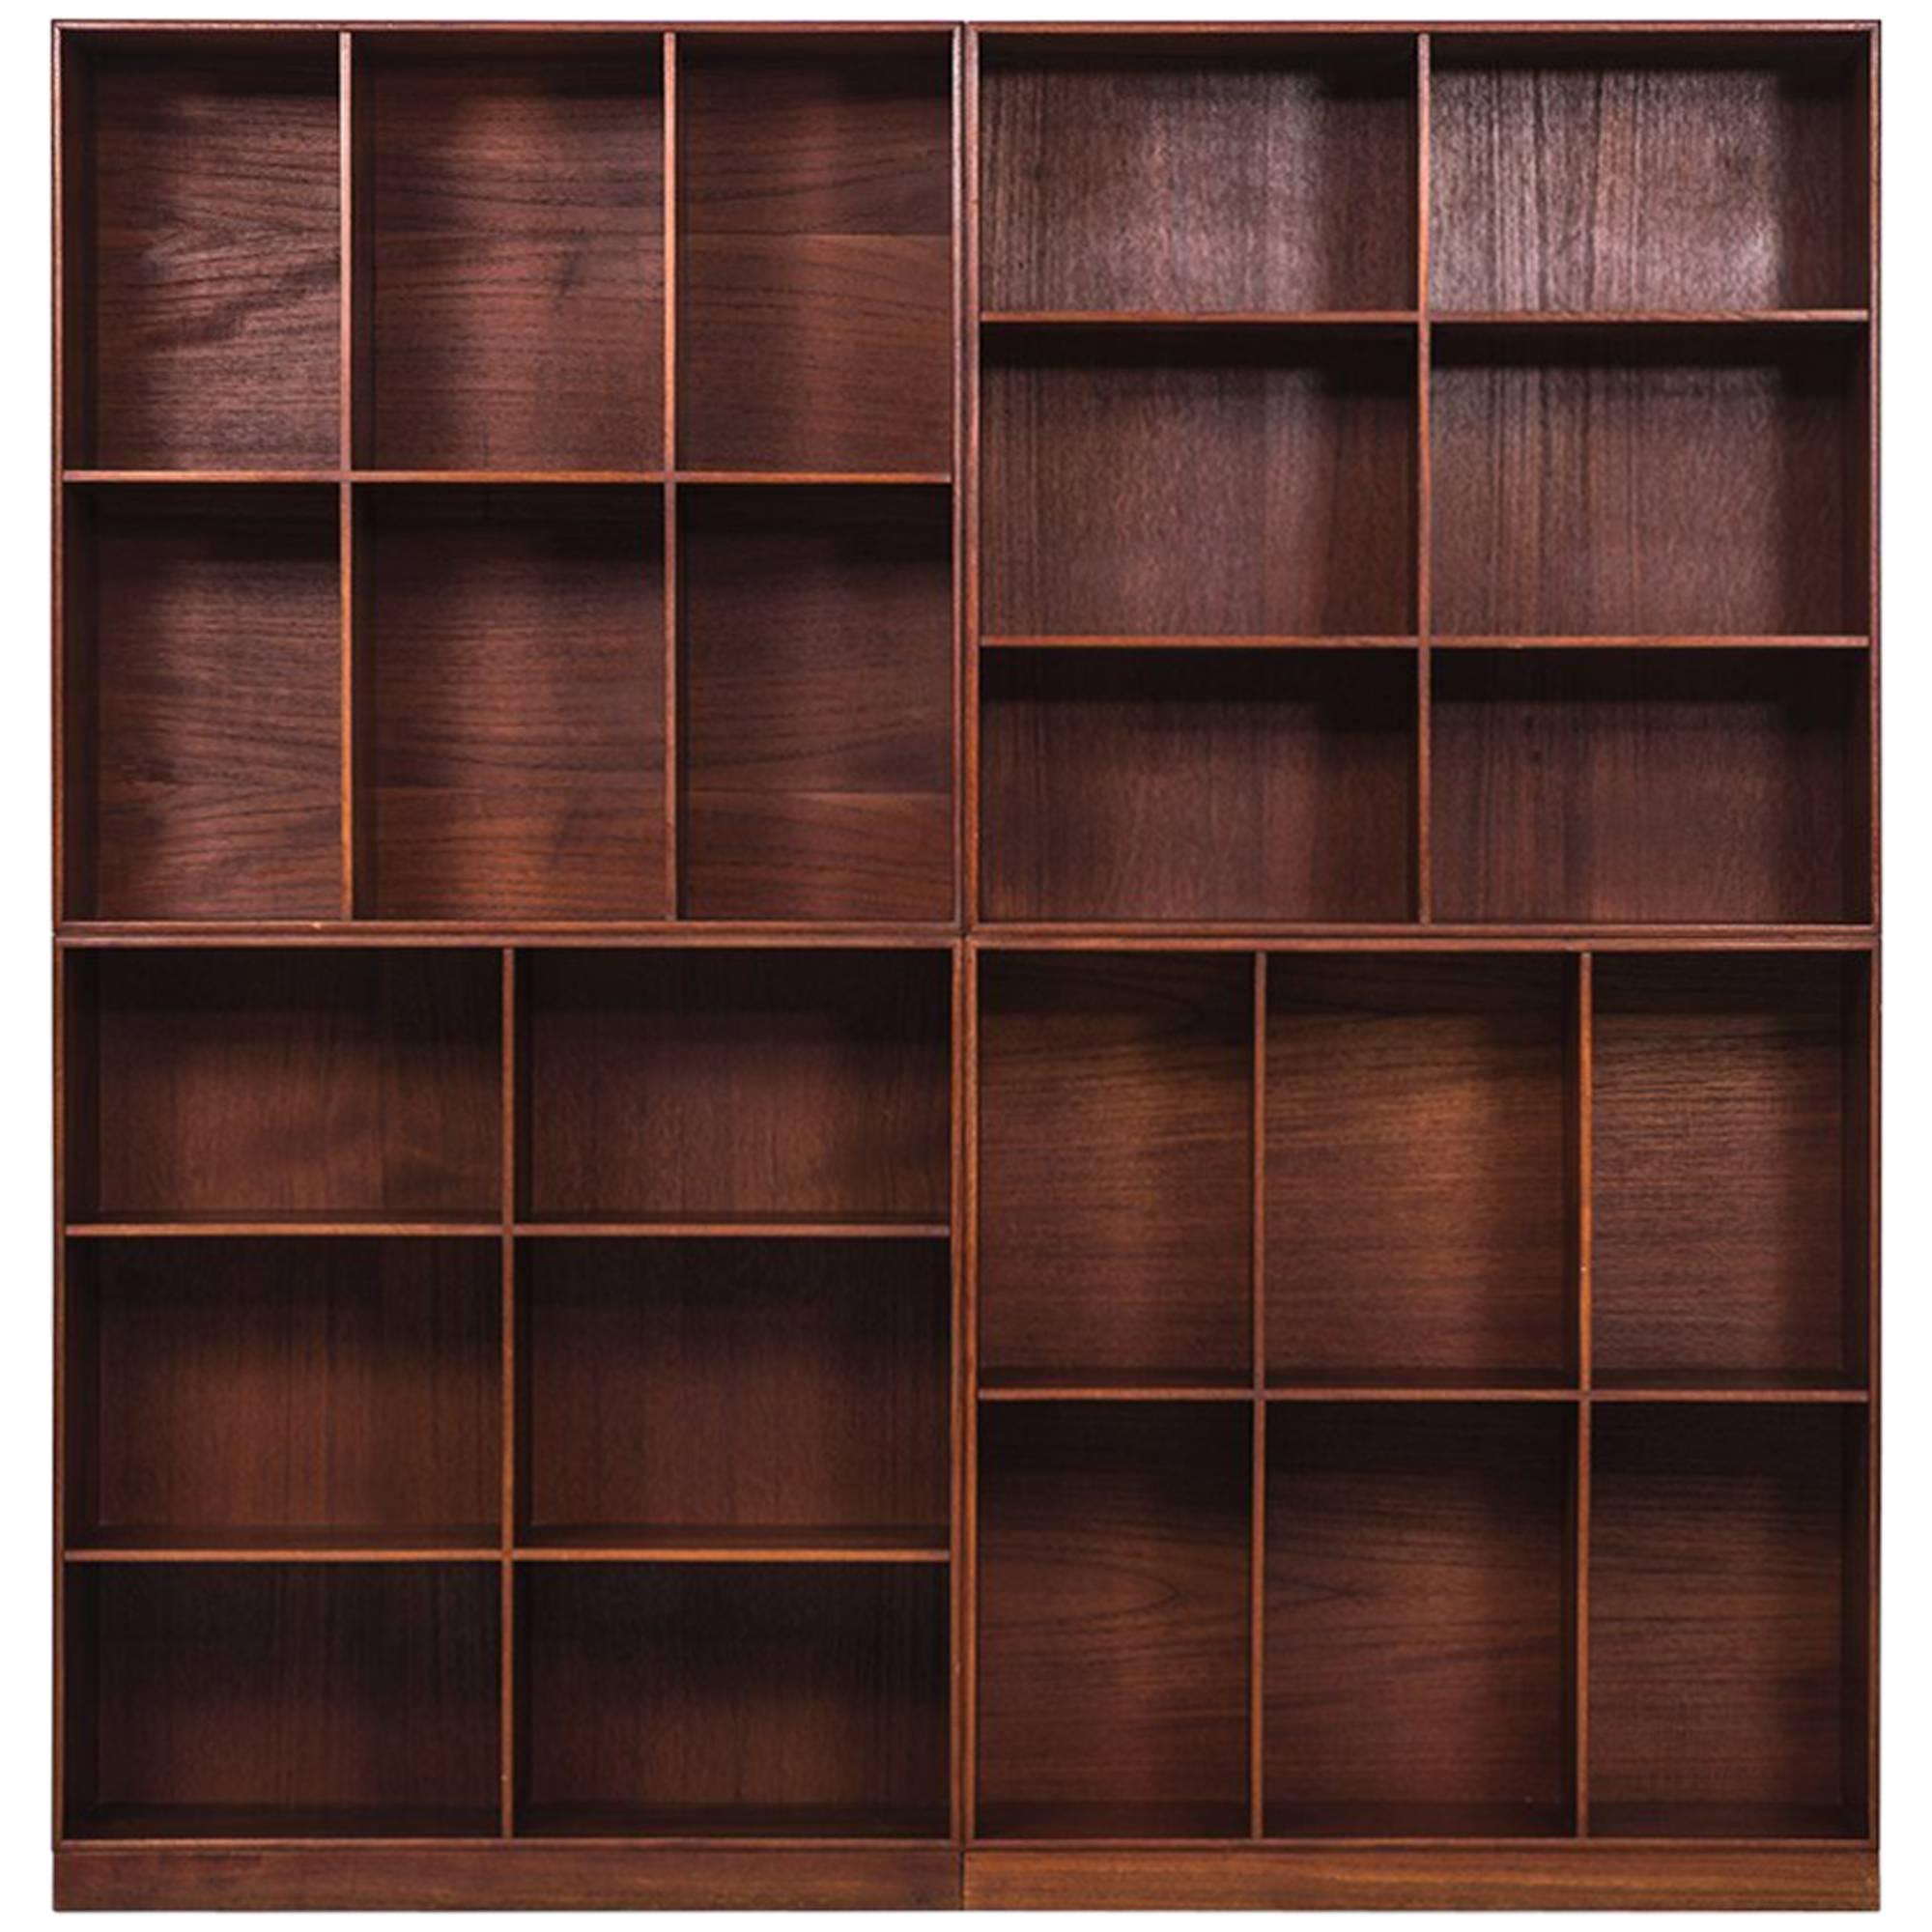 Mogens Koch Bookcases in Teak by Rud, Rasmussen in Denmark